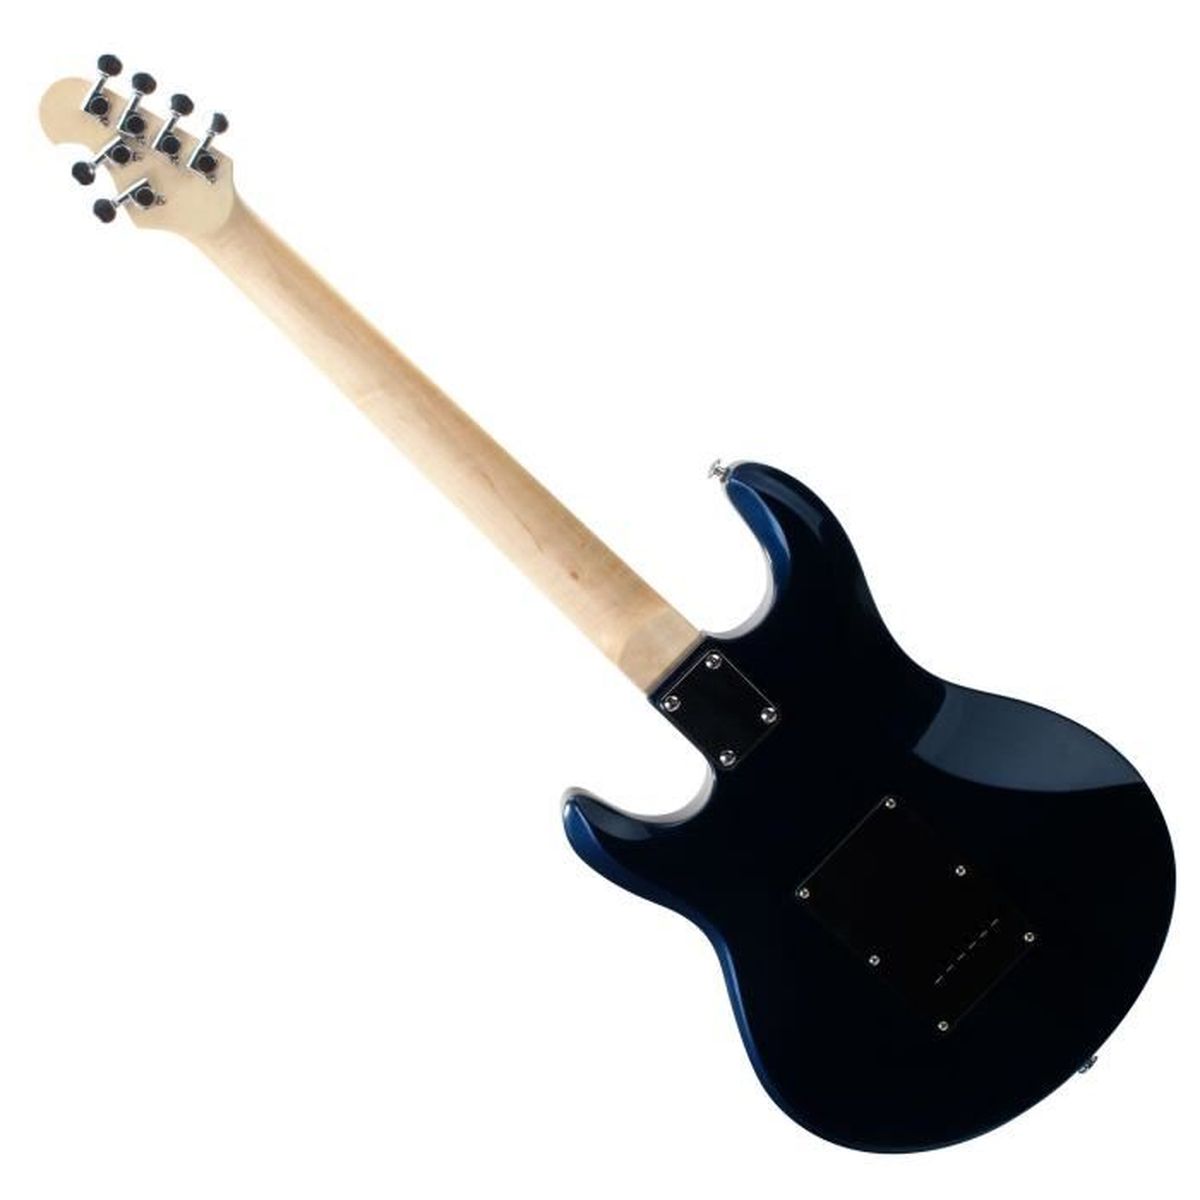 FLEOR Set de guitare /électrique Pickguard de style SSS avec vis de montage de plaque arri/ère pour partie de guitare Fender Strat USA//MEX 1 pli blanc